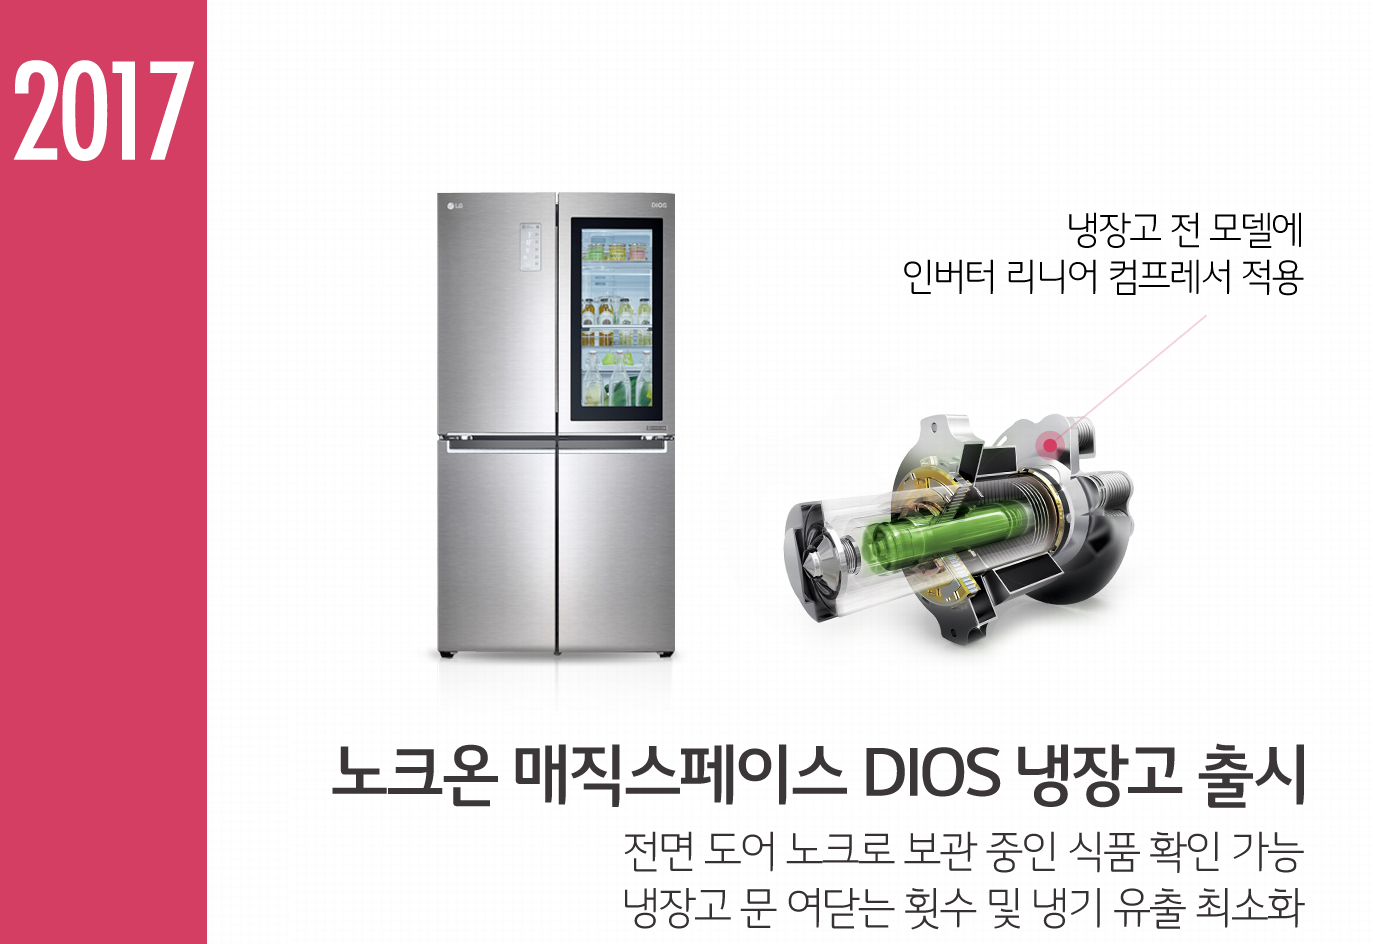 2017년, 첨단 기술 냉장고로 효율적인 주방문화를 선도